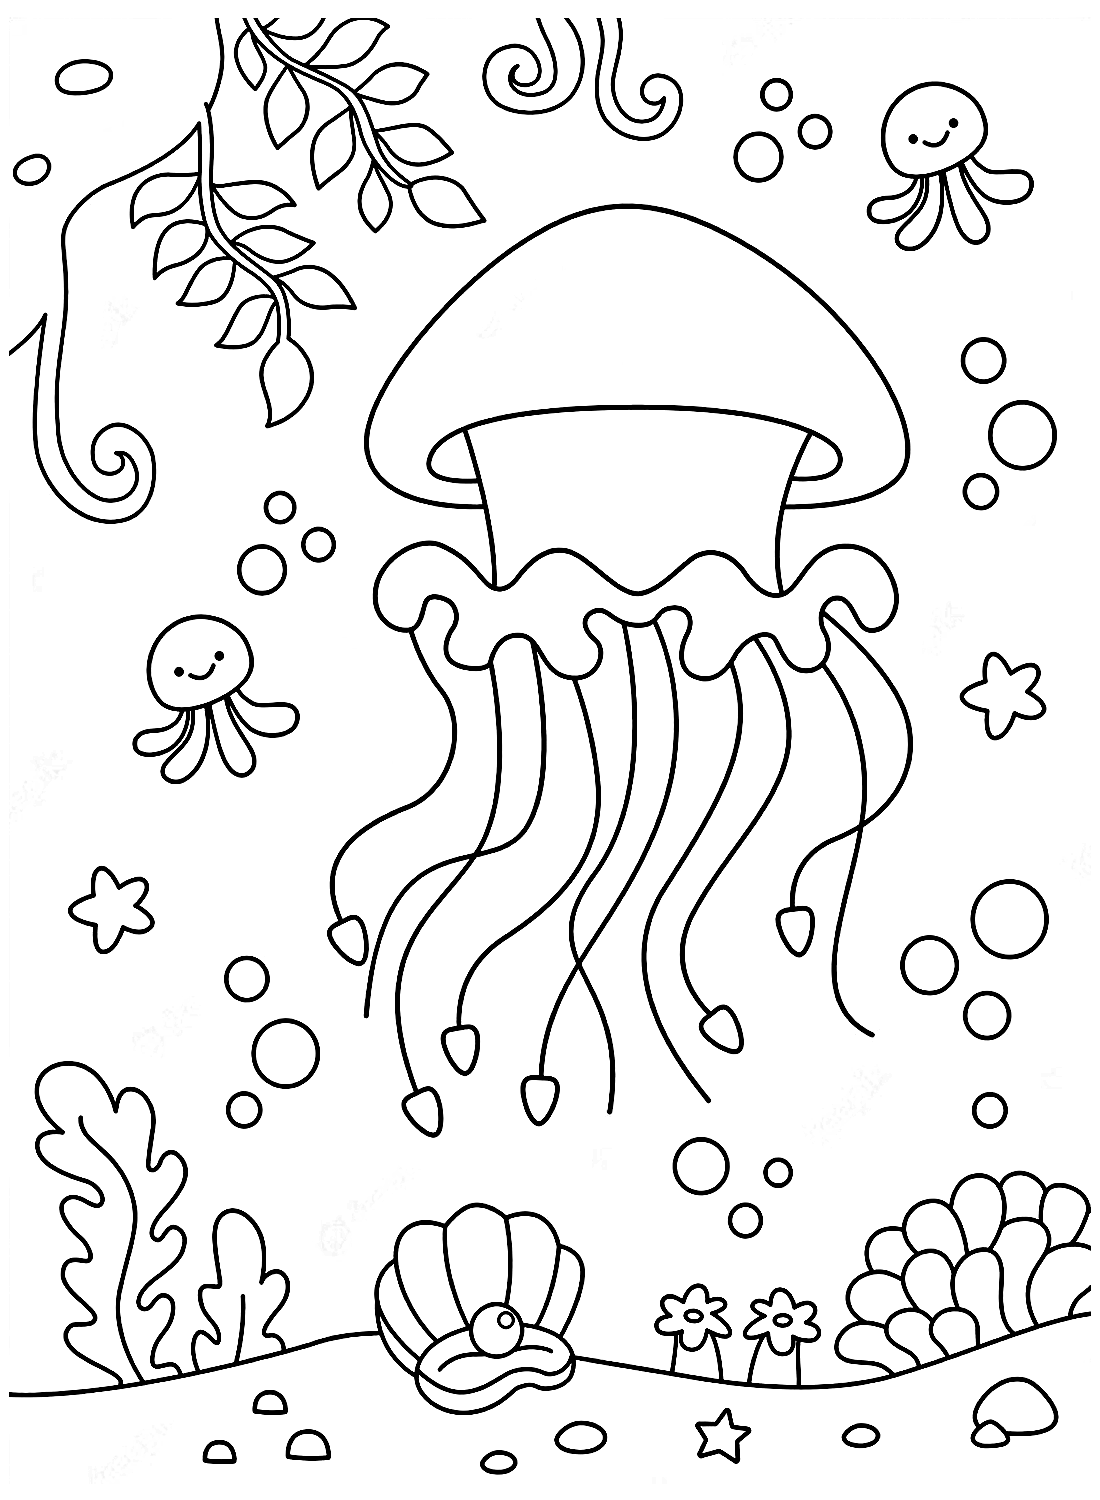 L'oceano e la medusa da colorare